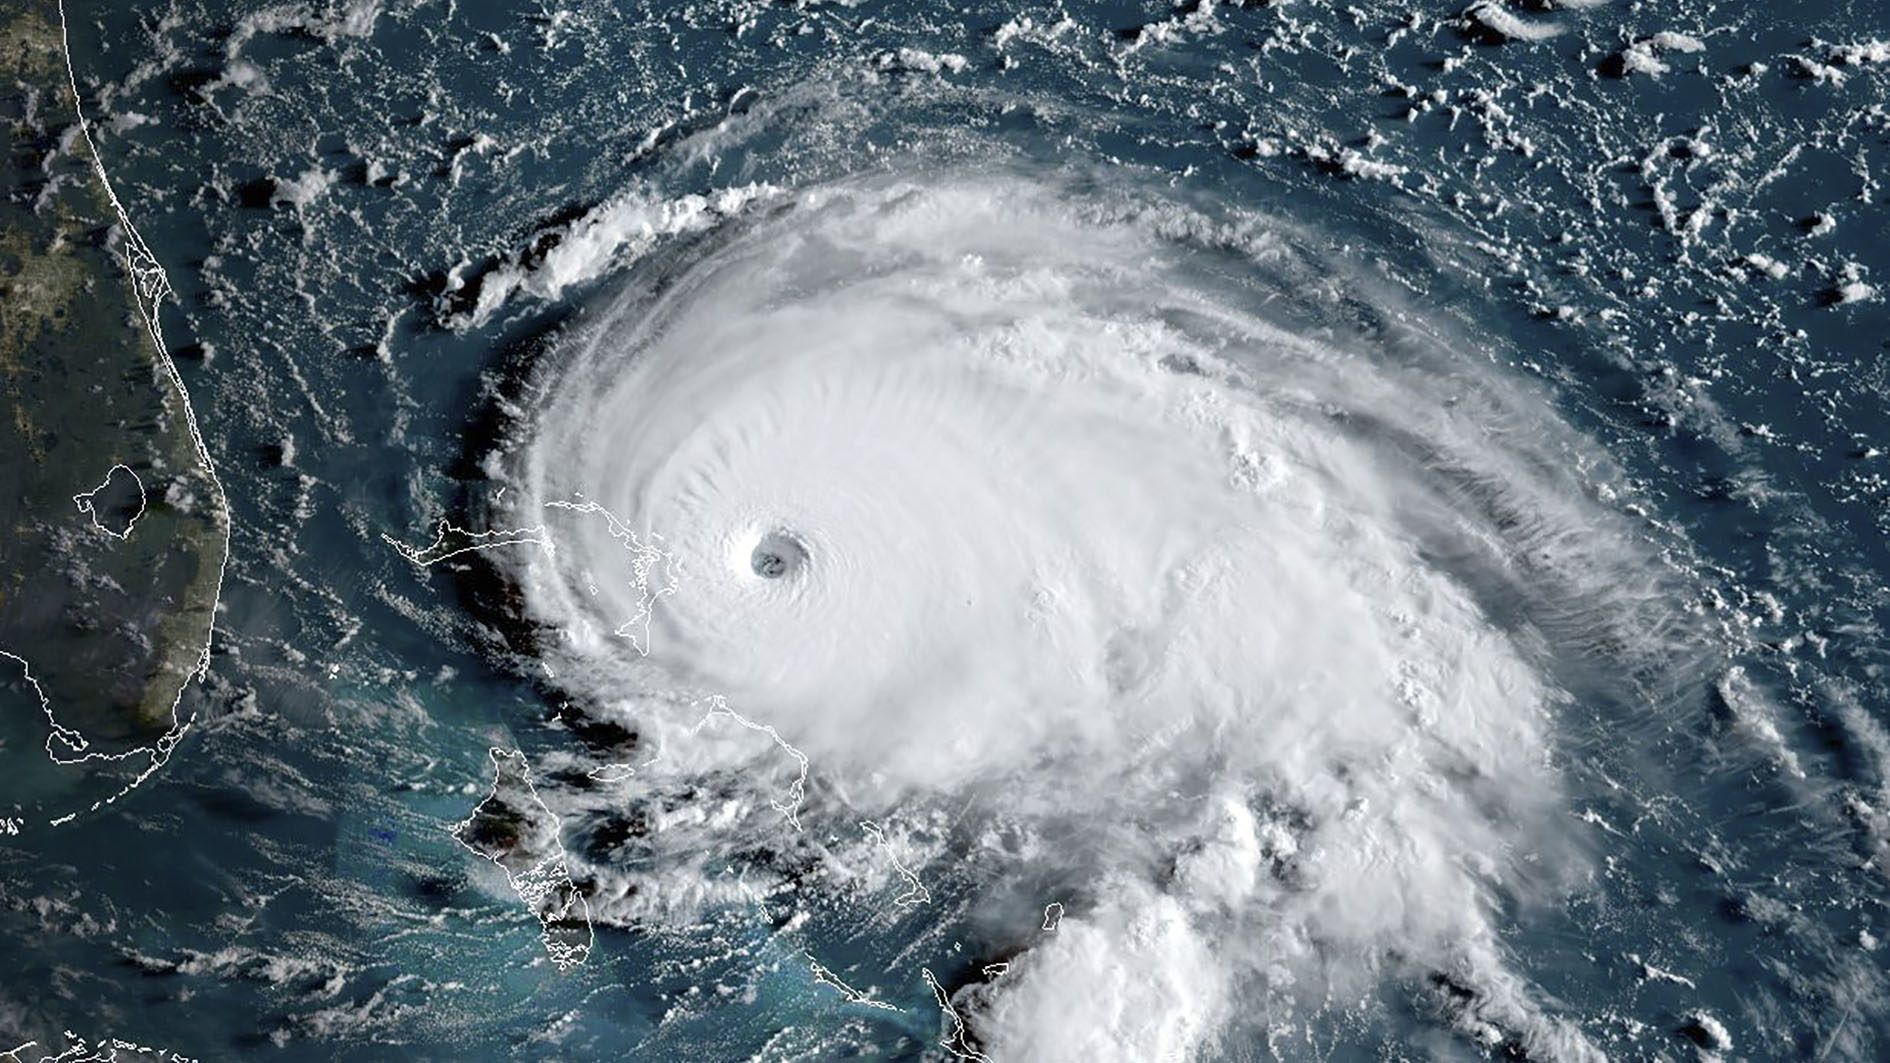 Gyönyörű, de nagyon ijesztő – így néz ki az űrből a Dorian hurrikán